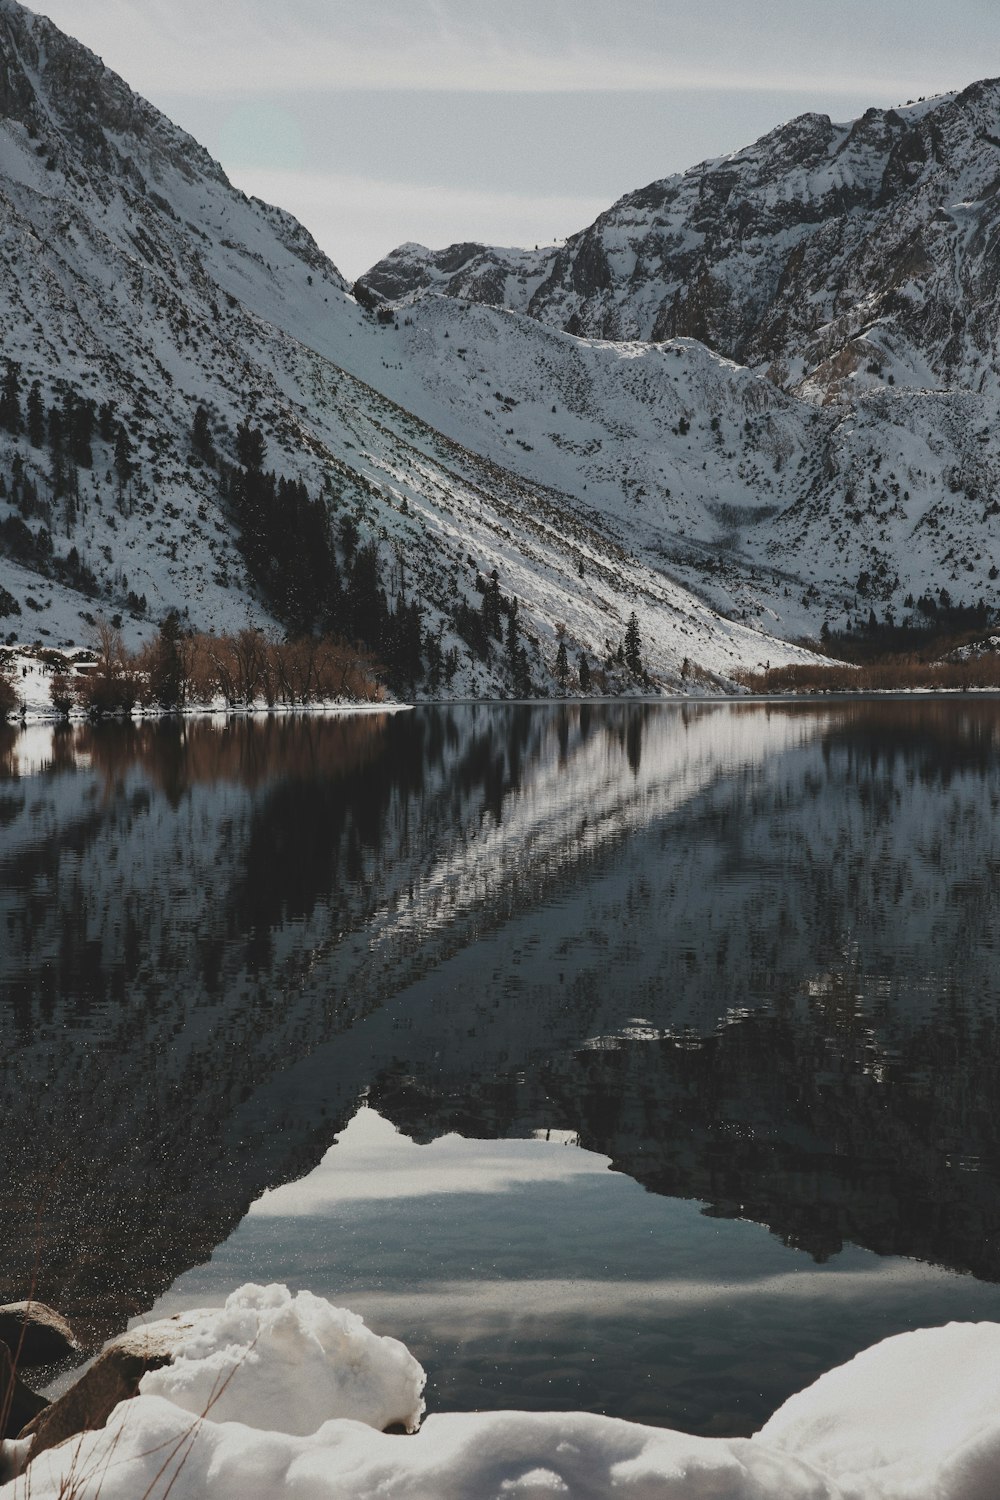 Fotografía de un lago y una montaña nevada durante el día